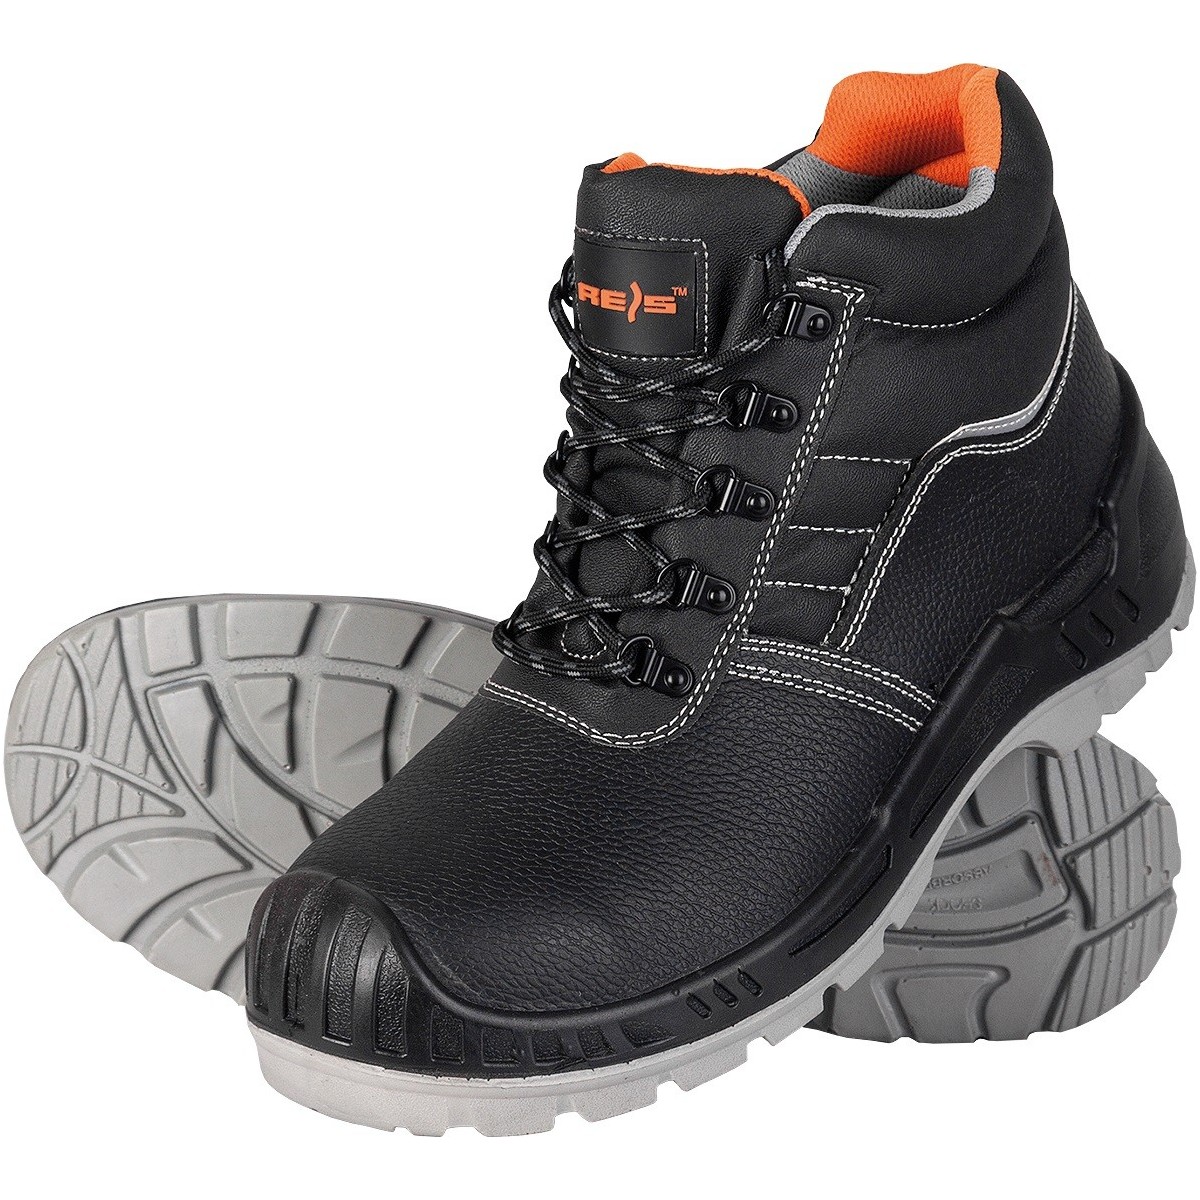 Buty bezpieczne REIS TITAN czarno-pomarańczowe S3 SRC r. 39-47